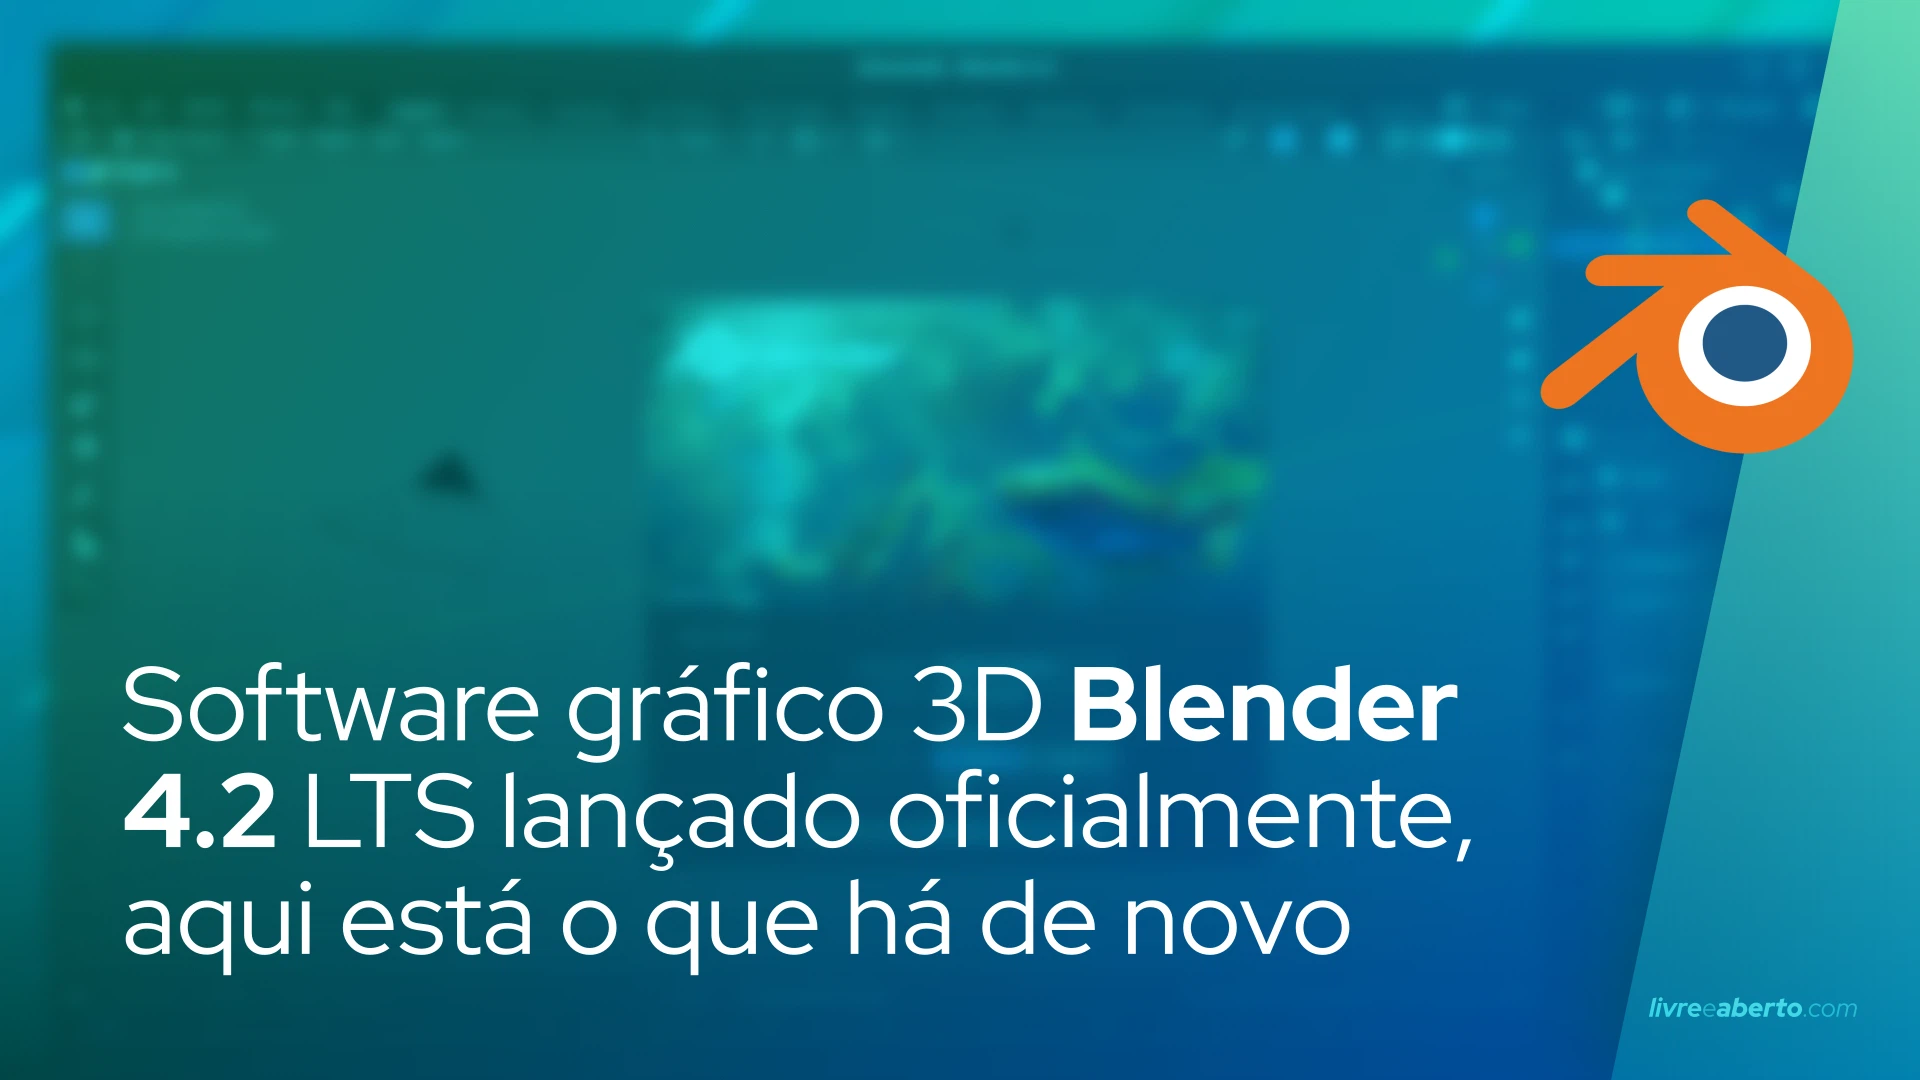 Software gráfico 3D Blender 4.2 LTS lançado oficialmente, aqui está o que há de novo